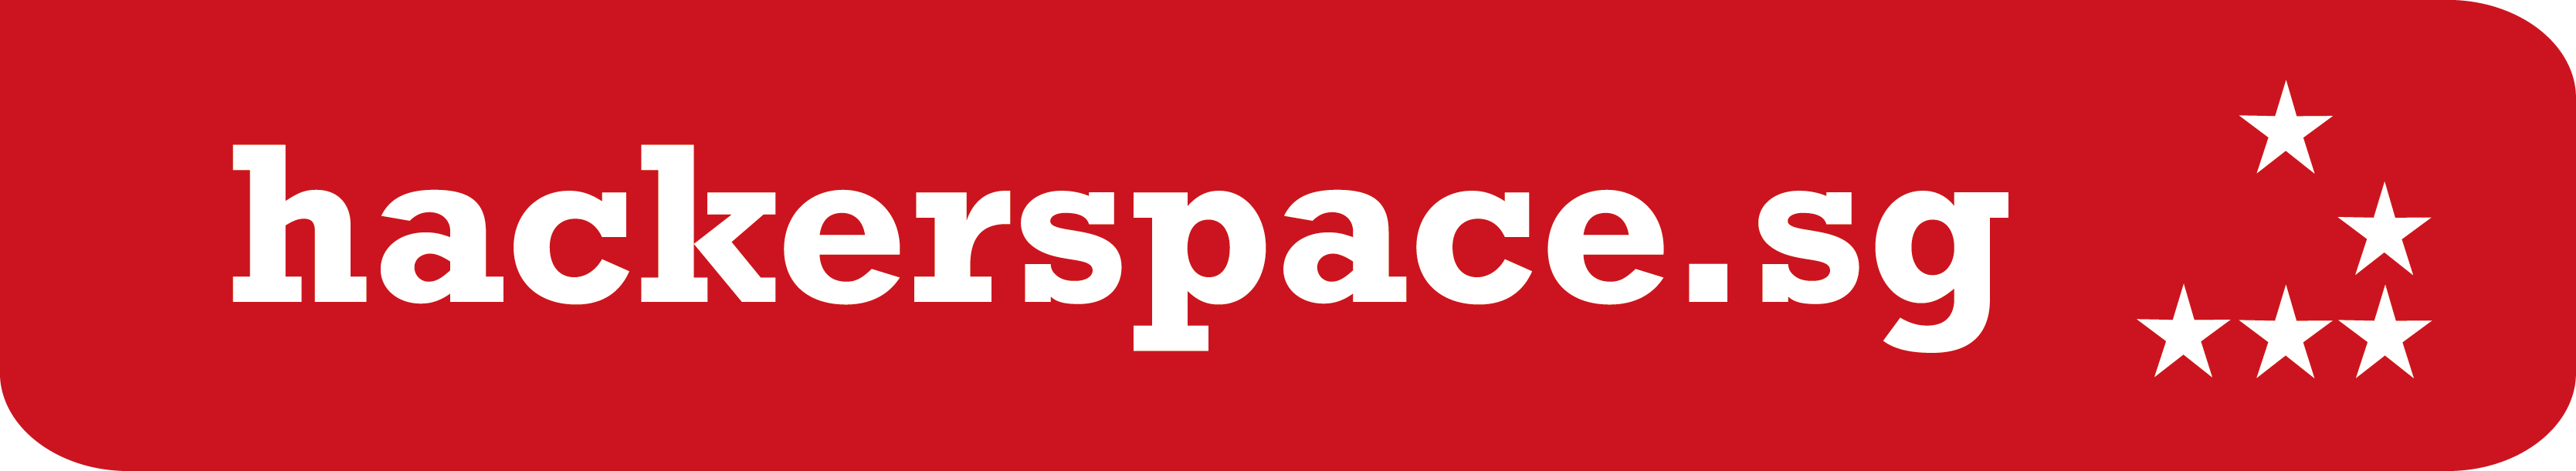 HackerspaceSG Logo